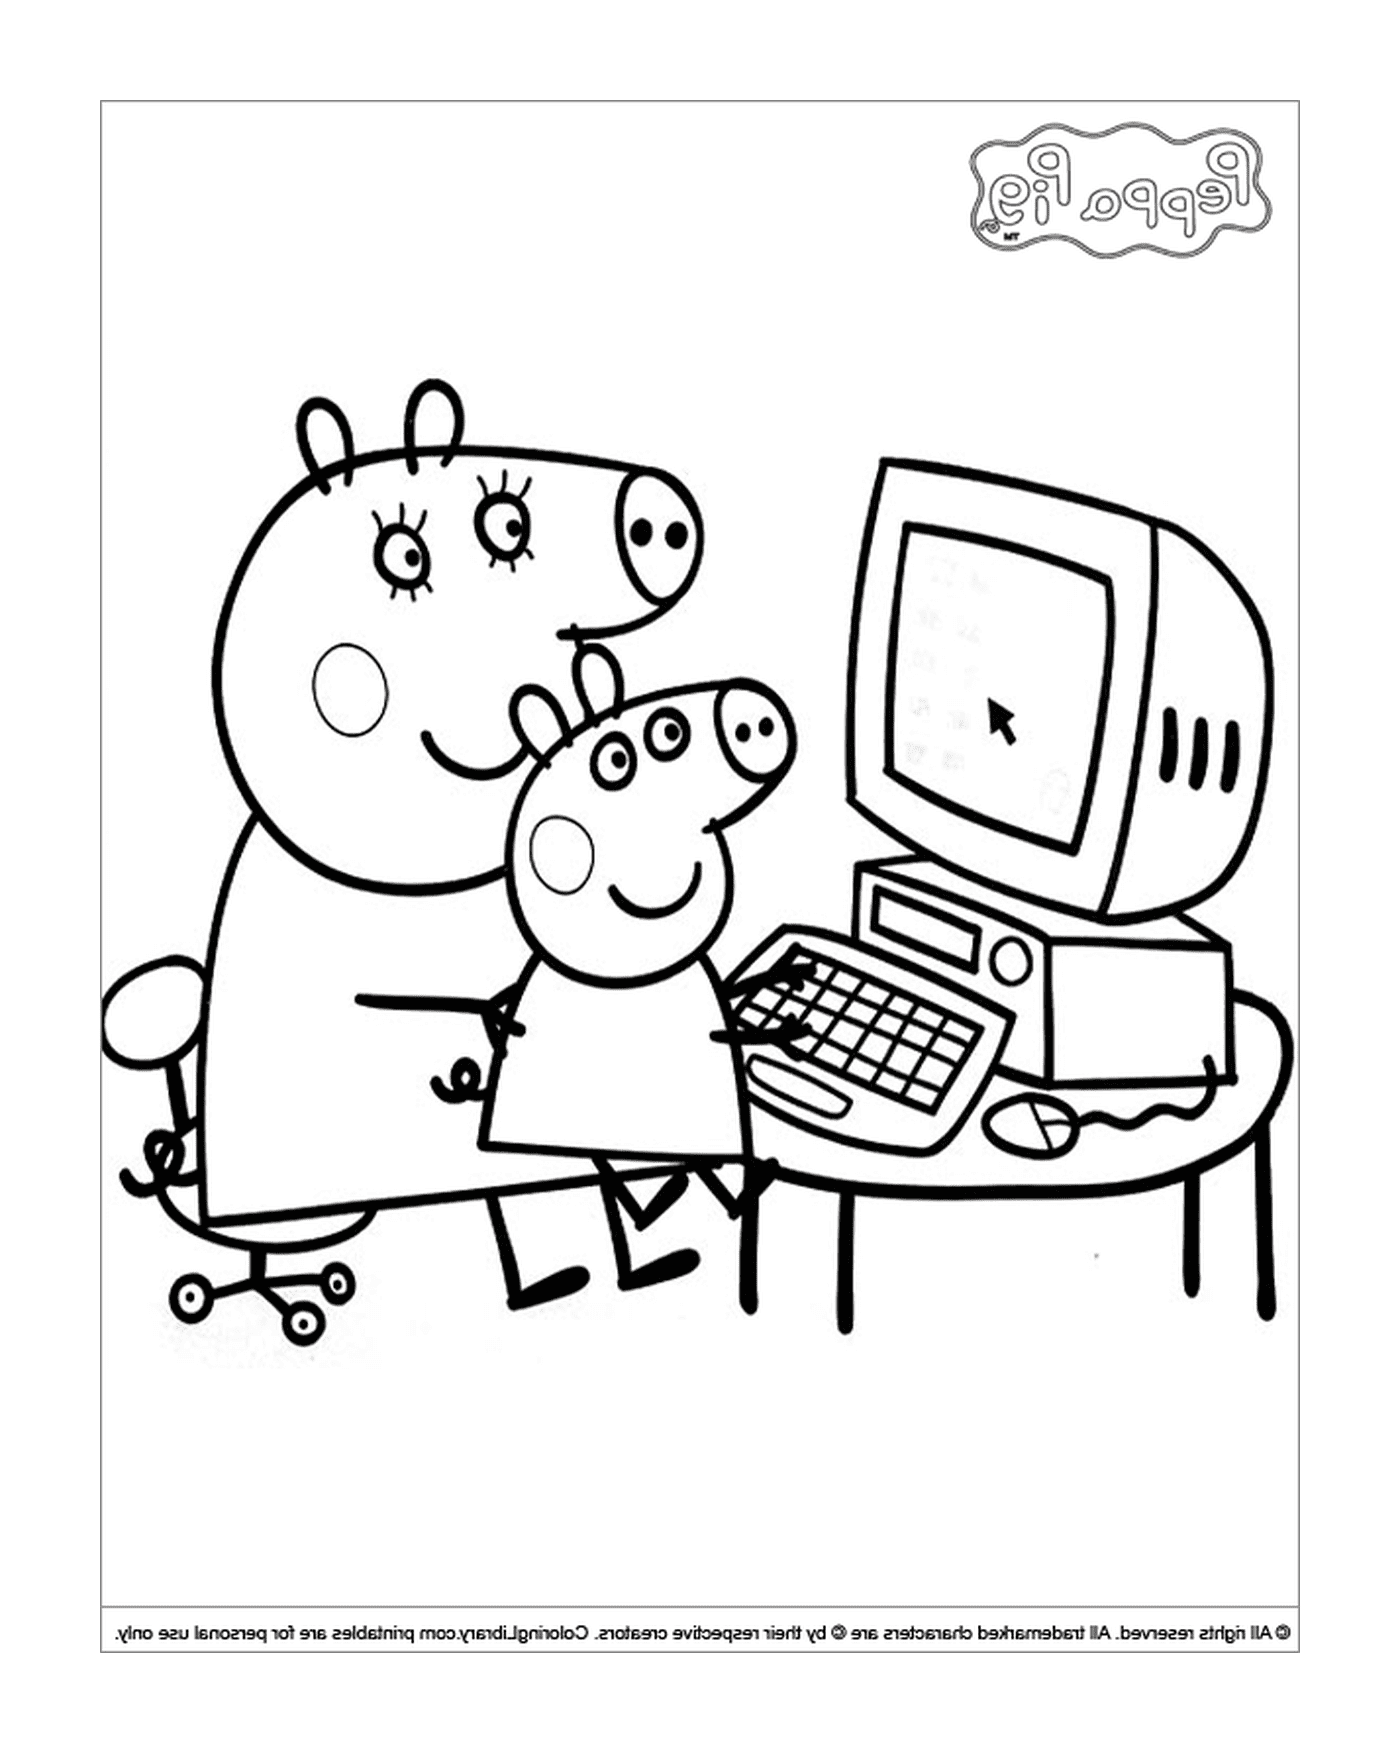  Пеппа Свинья и его отец в компьютере 